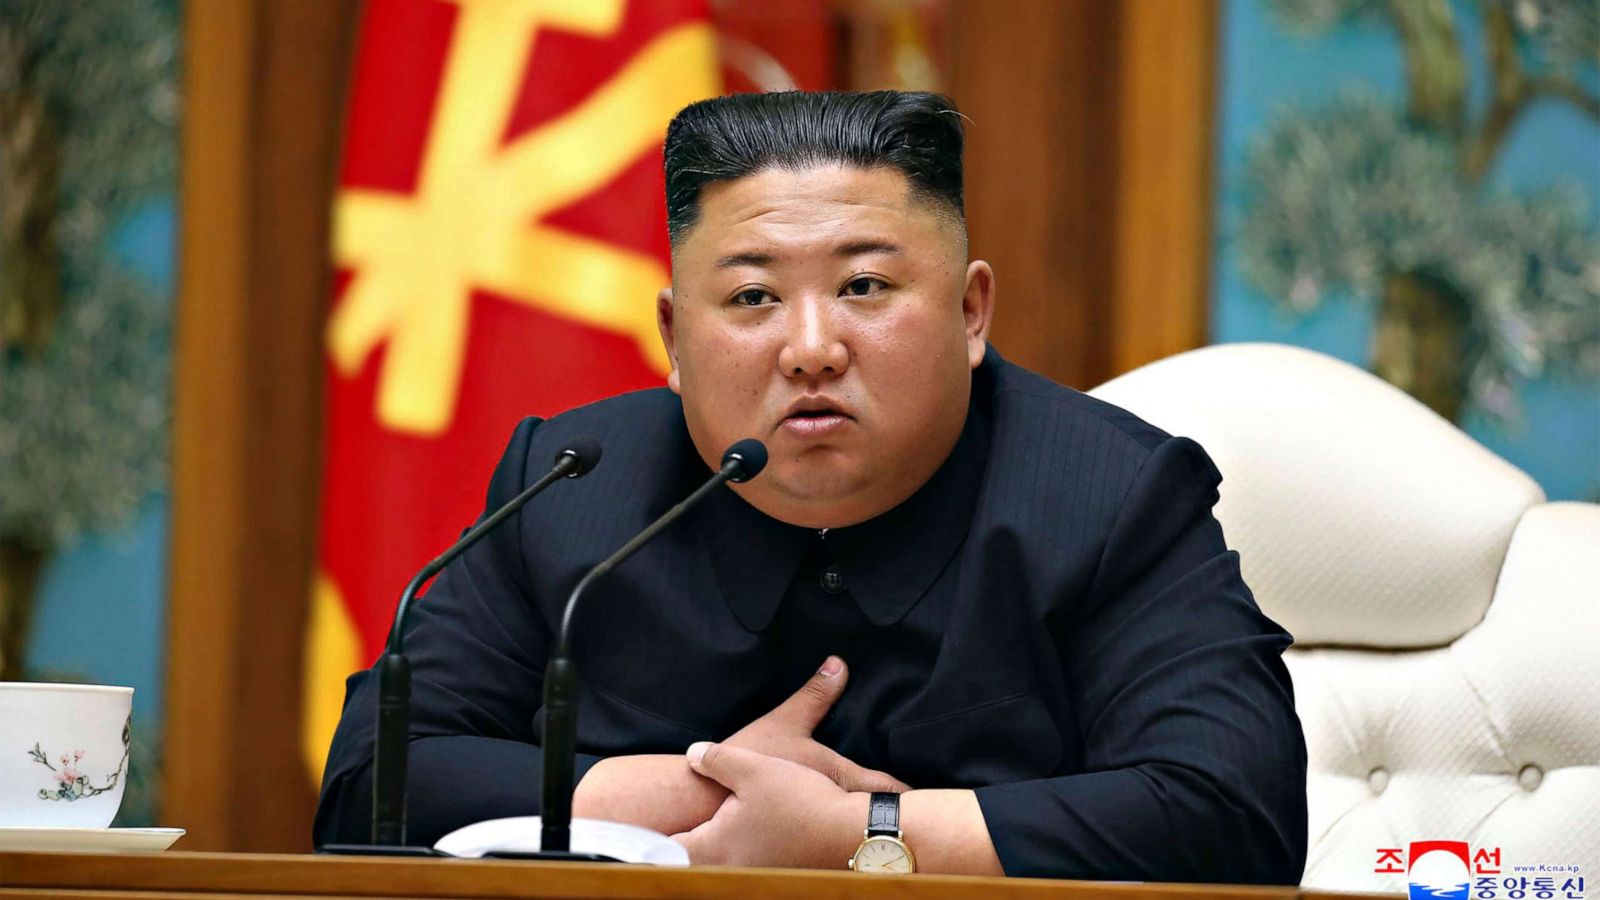 Kim Jong-un की सेहत और उत्तर कोरिया की सत्ता बना बड़ी पहेली